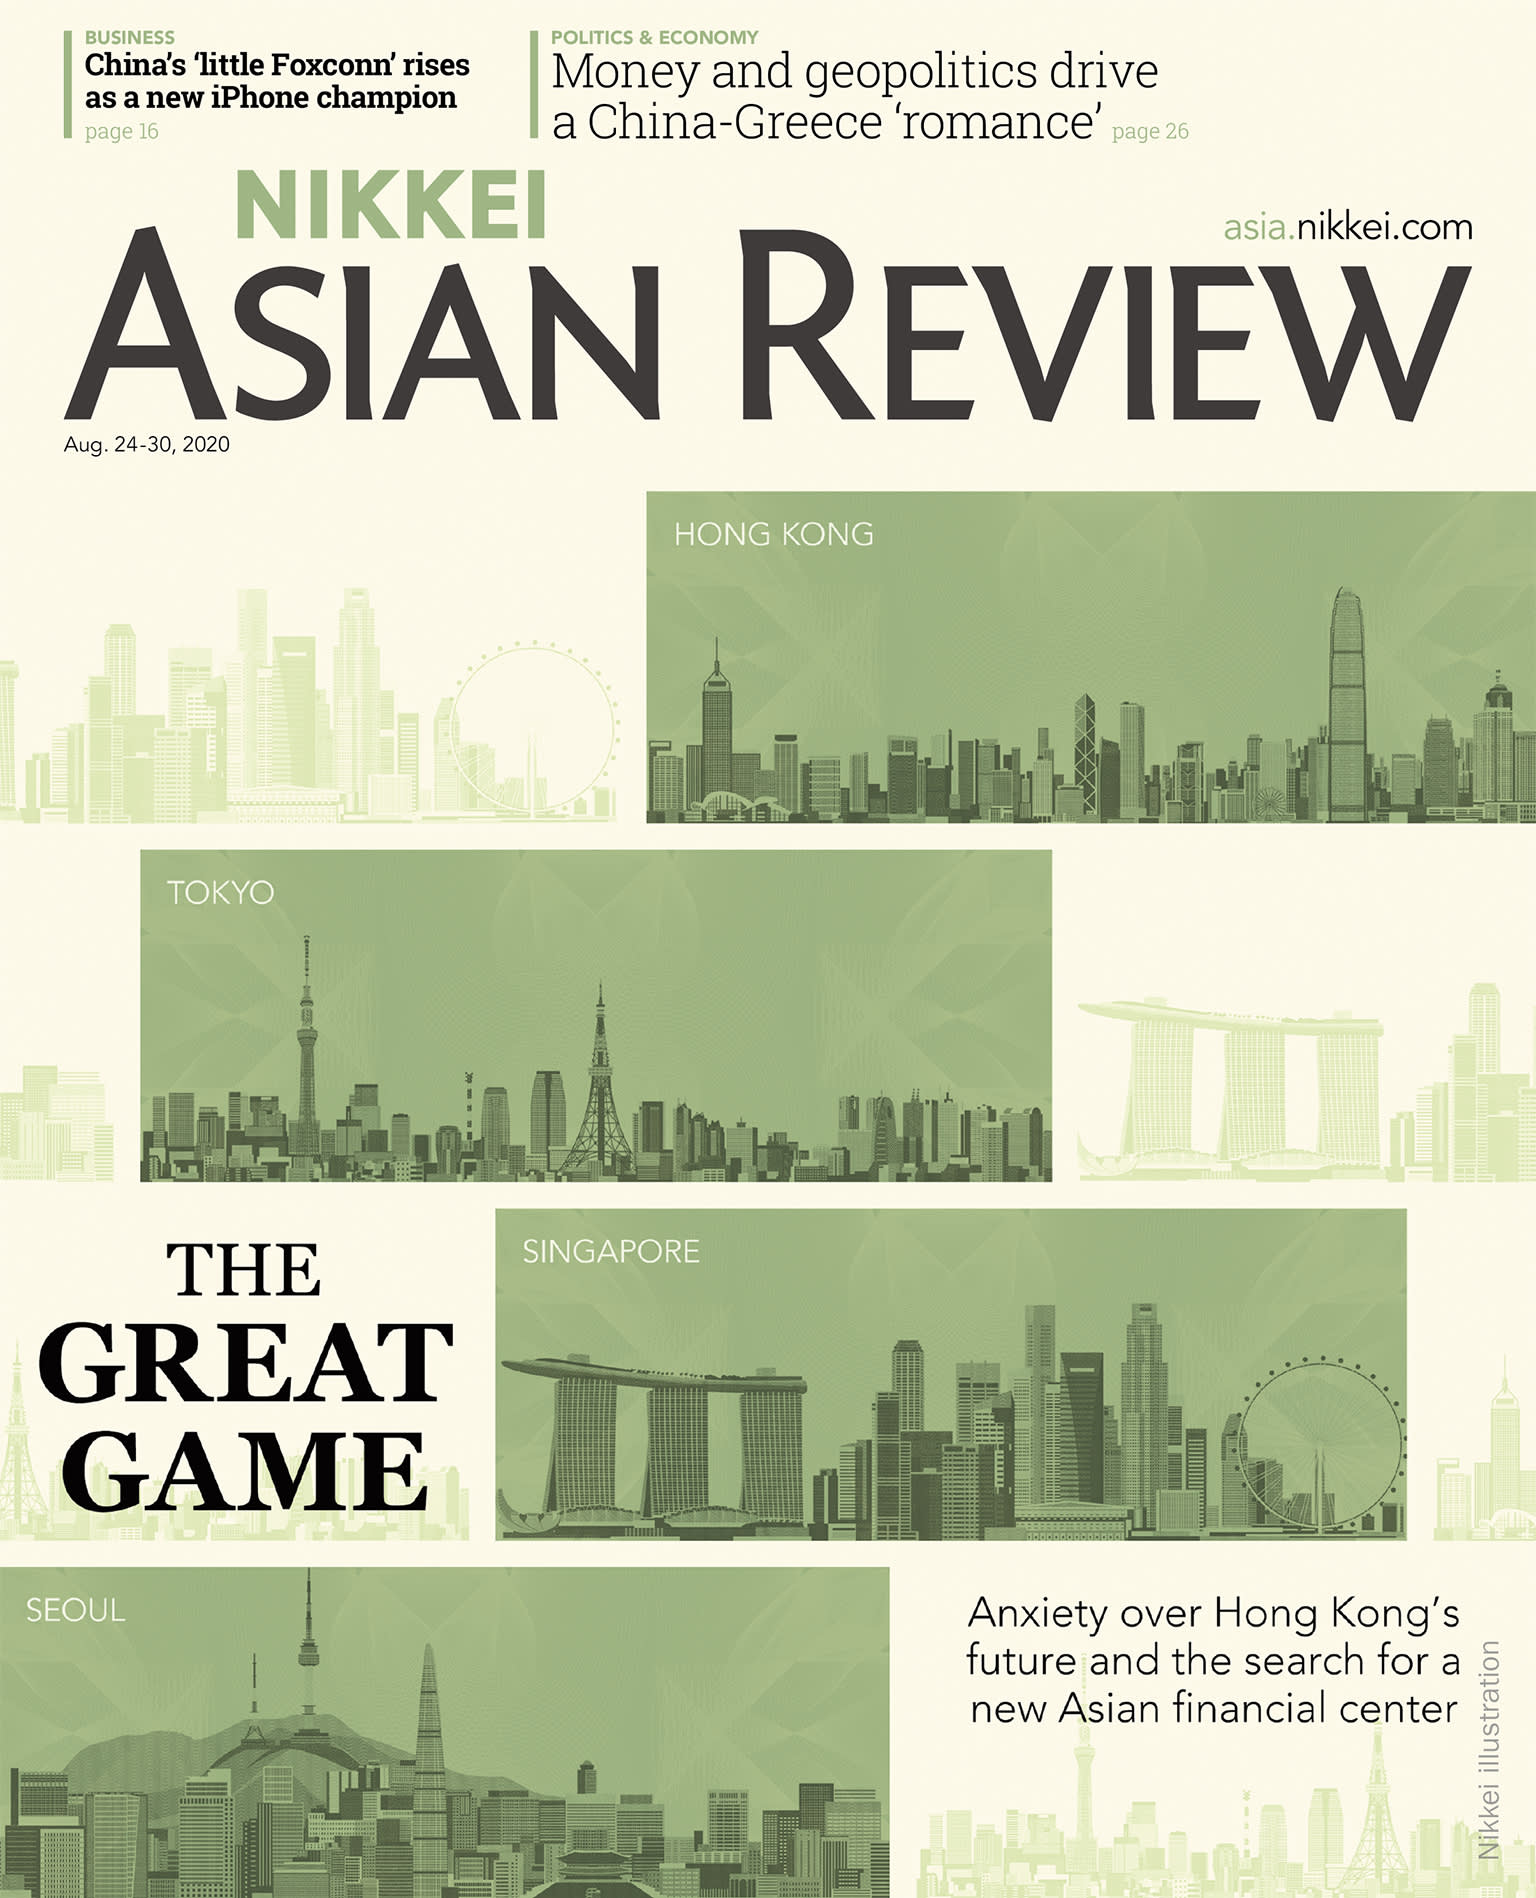 Bộ Nikkei Asian Review các số 26, 27, 28, 29, 30, 31, 32, 33, 34, 35, 36, 37 , tạp chí kinh tế nước ngoài, nhập khẩu từ Singapore